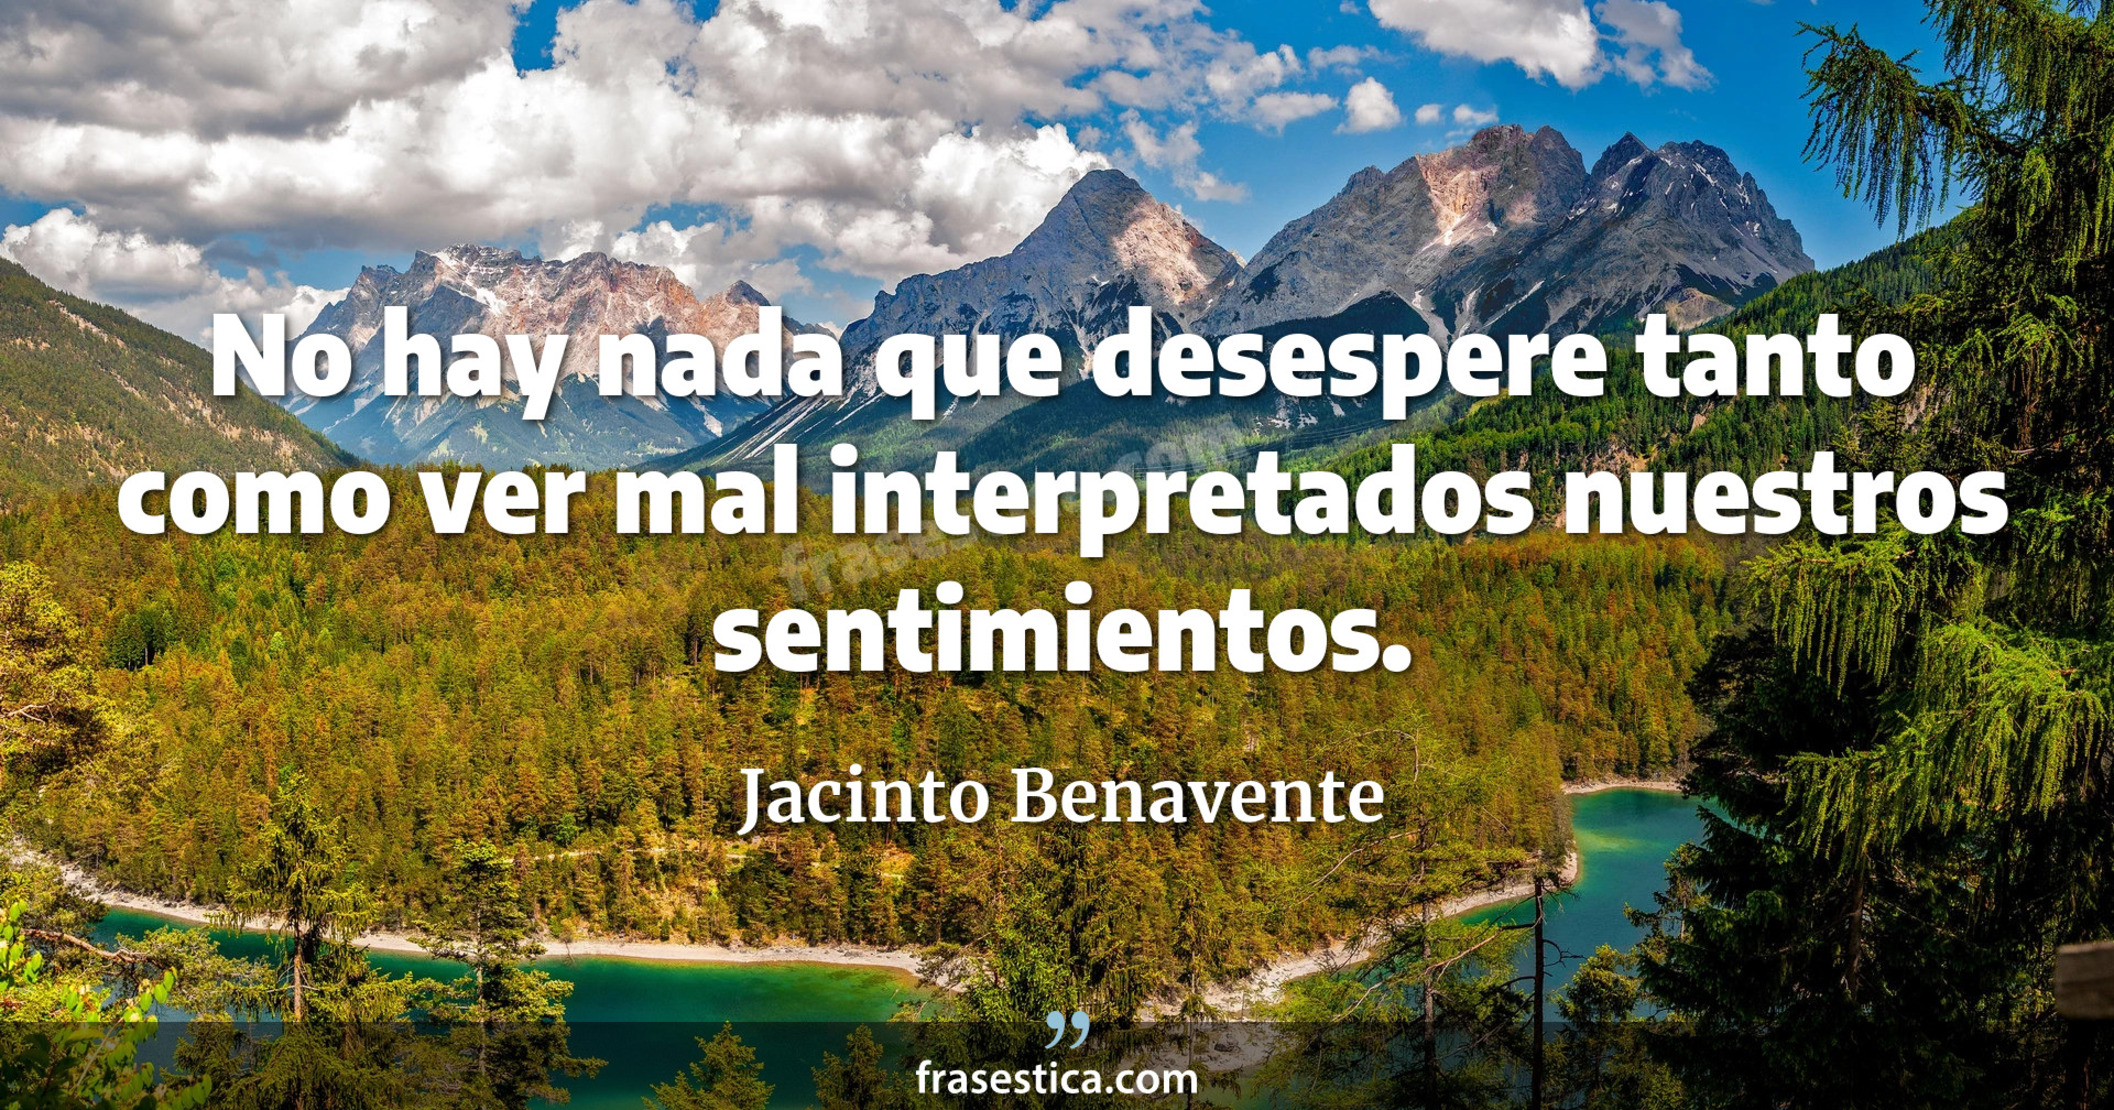 No hay nada que desespere tanto como ver mal interpretados nuestros sentimientos. - Jacinto Benavente